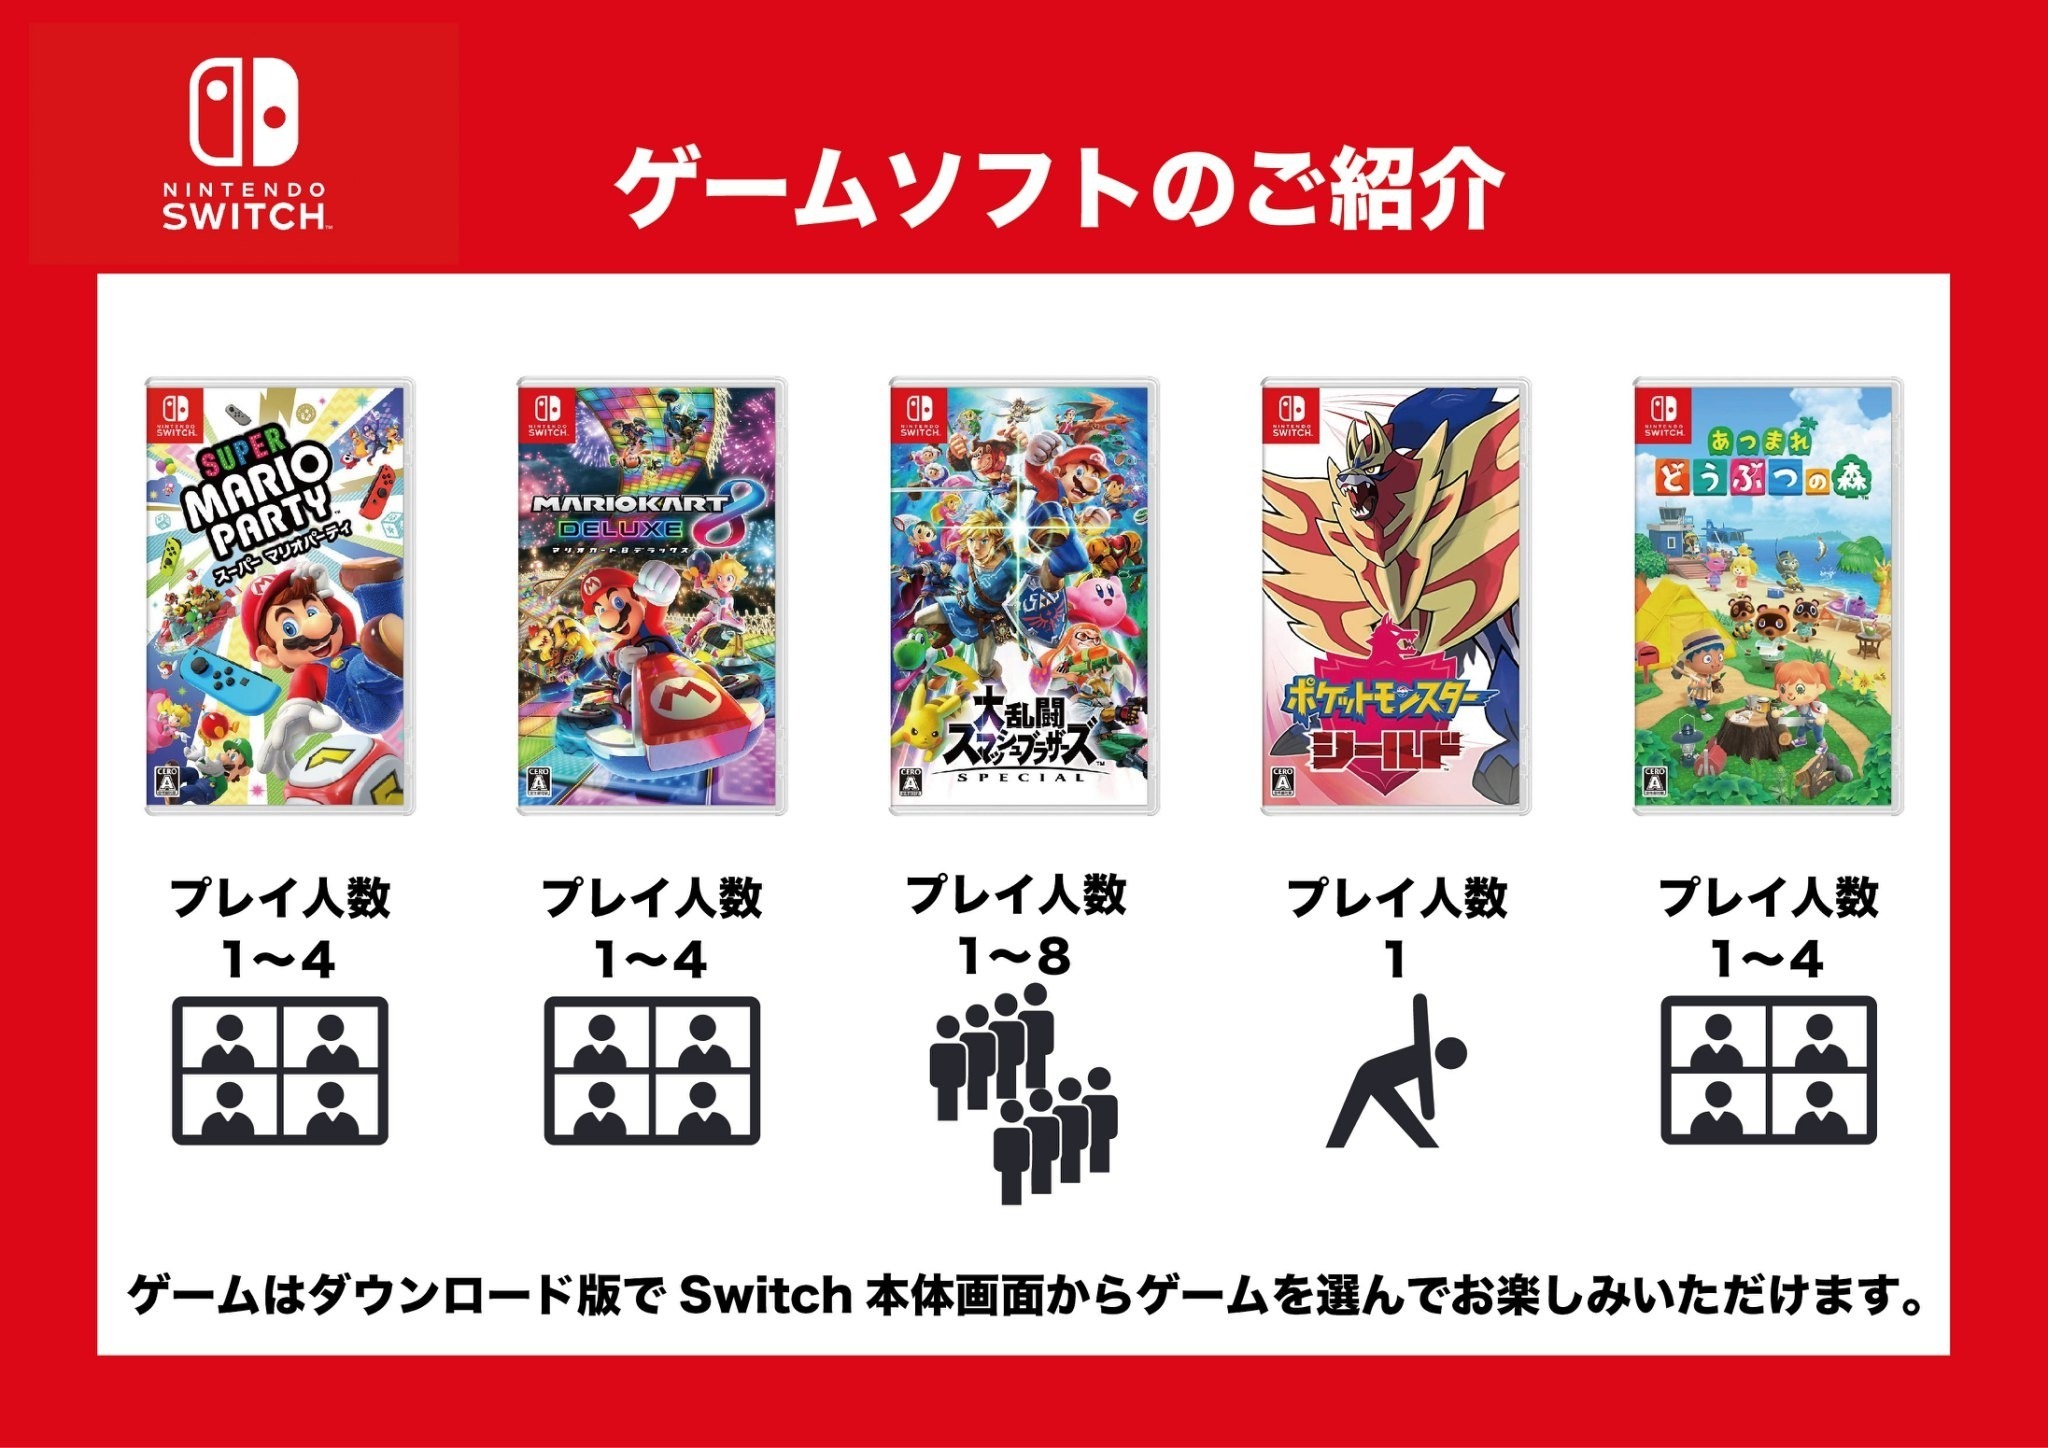 《追加オプション》2000円/ Nintendo Switch お楽しみいただけます。コントローラー6台、マリオパーティ、マリオカート8、大乱闘スマッシュブラザーズ、あつまれどうぶつの森、ポケモンシールド ご希望の場合はチェックイン2日前までにお申し付けください。